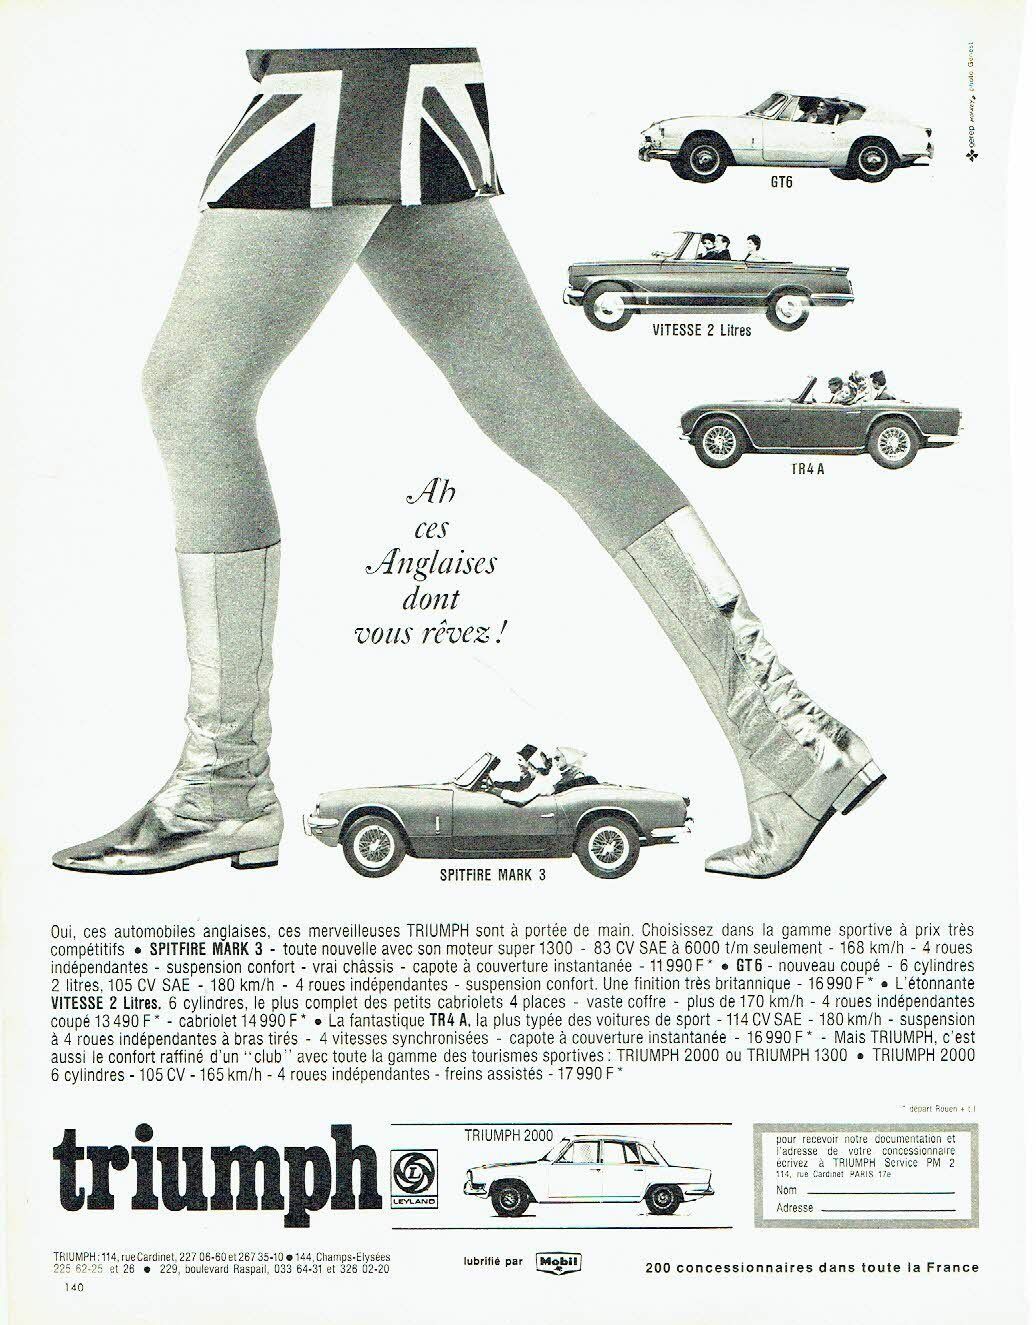 1967 Triumph Spitfire Mark 3 ah ces anglaises dont vous reviez